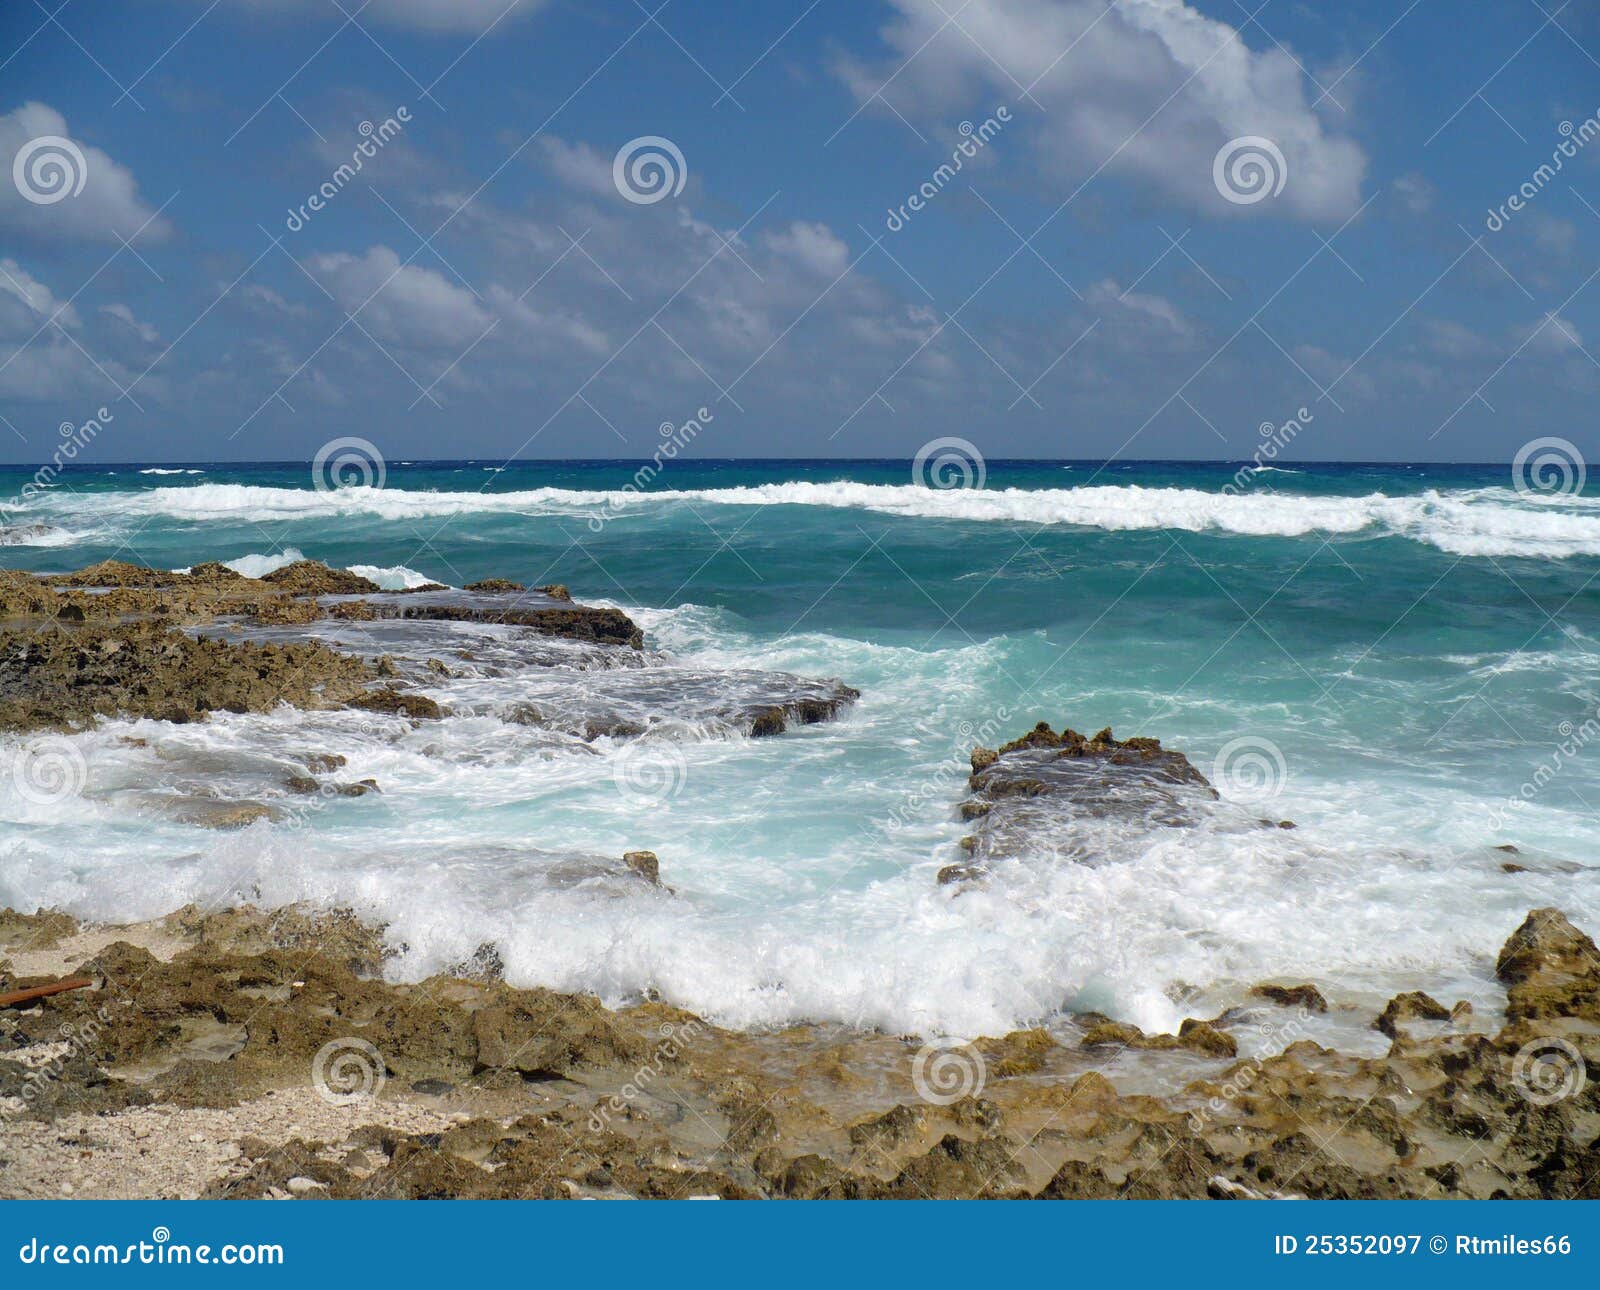 Rocky Ocean Beach in Cozumel Mexico. Breaking waves of ocean hitting rocks in Cozumel Mexico